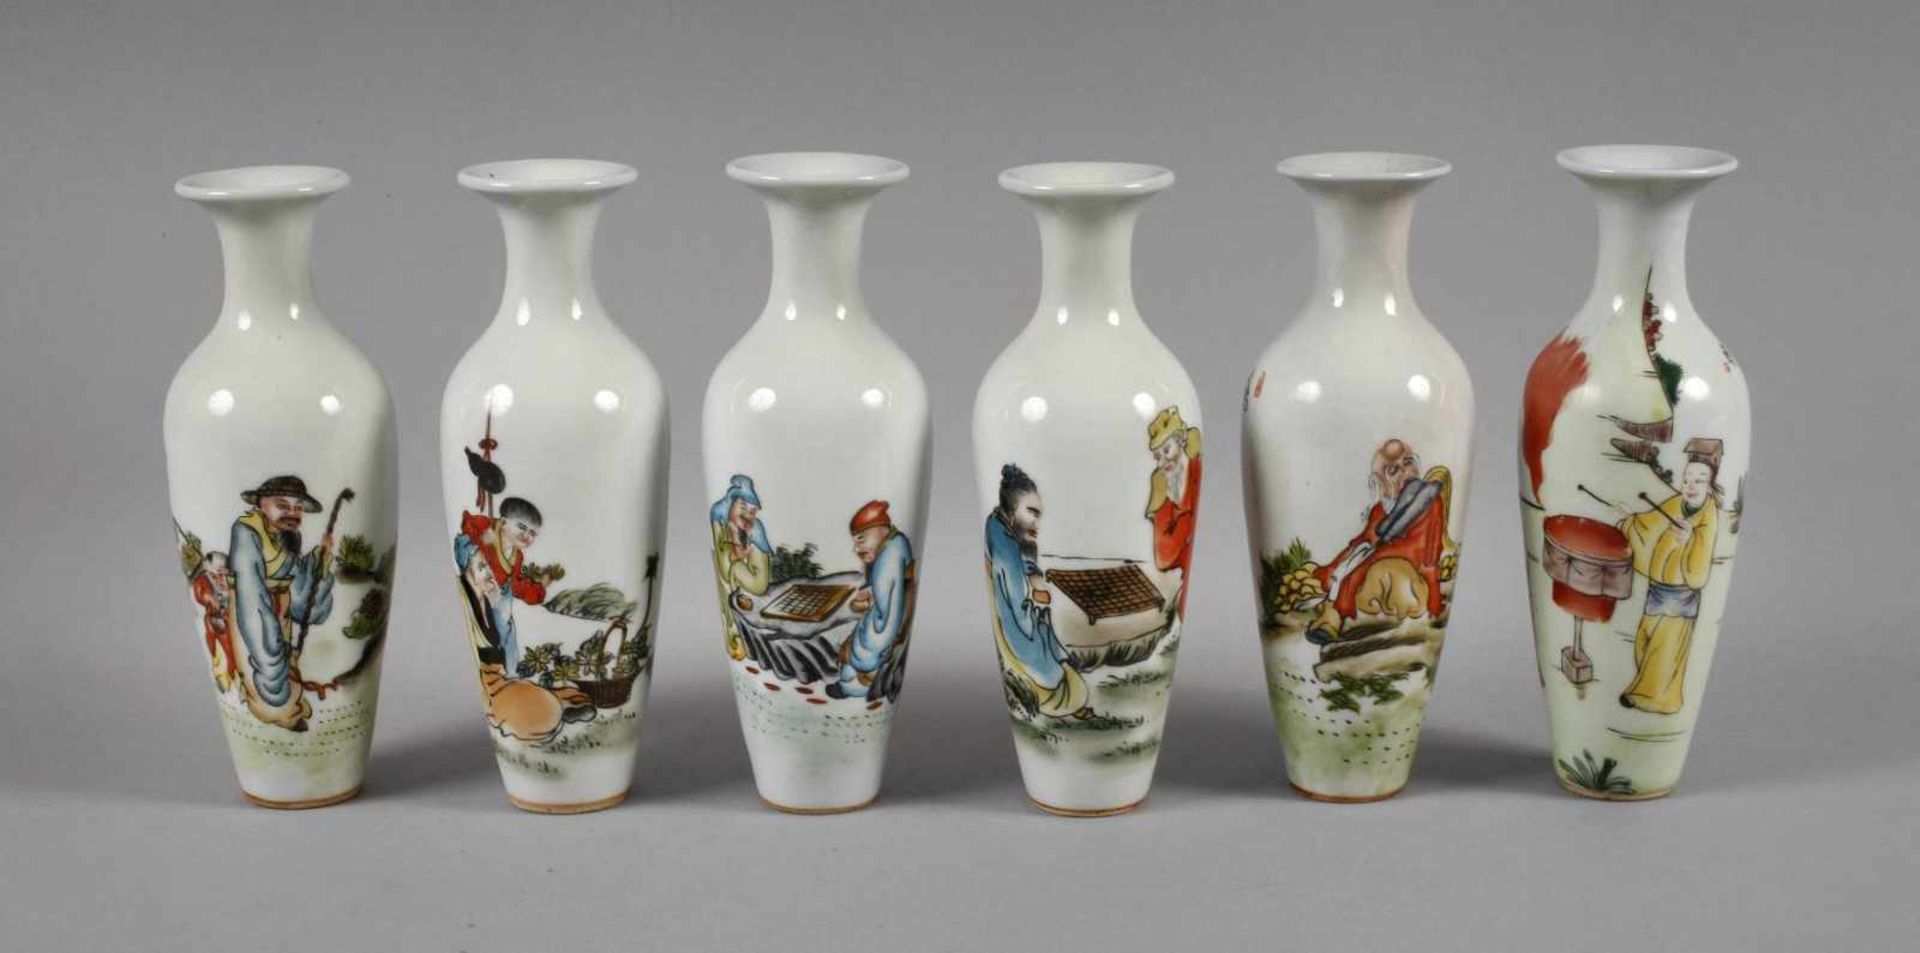 Sechs Vasen China1960er bis 1970er Jahre, gemarkt und signiert, Weißporzellan in polychromer